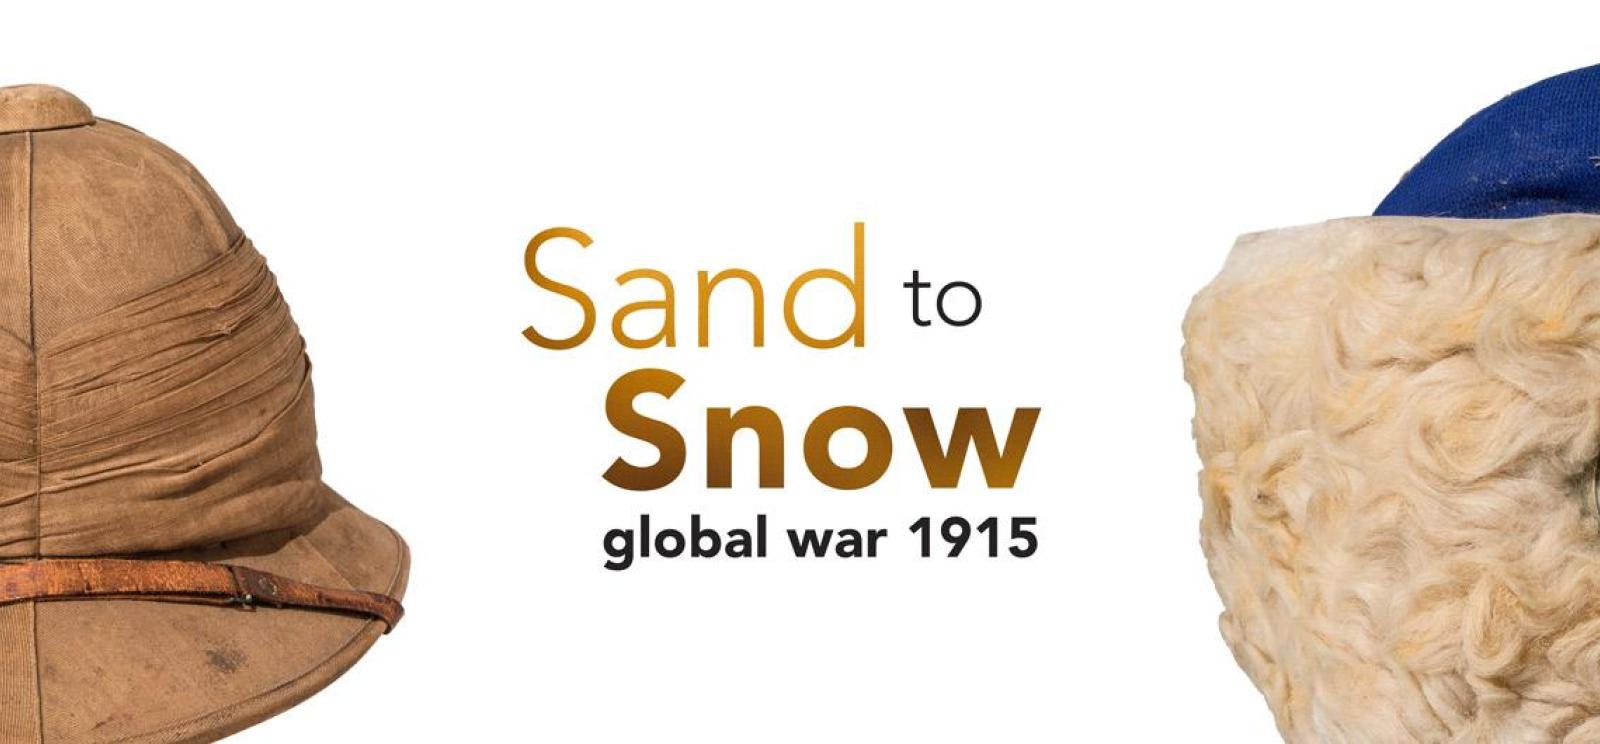 ပုံ- ဆာဖာရီဦးထုပ်နှင့် အမွေးထူသော ဆောင်းဦးထုပ်။ စာသား- Sand to Snow Global War 1915